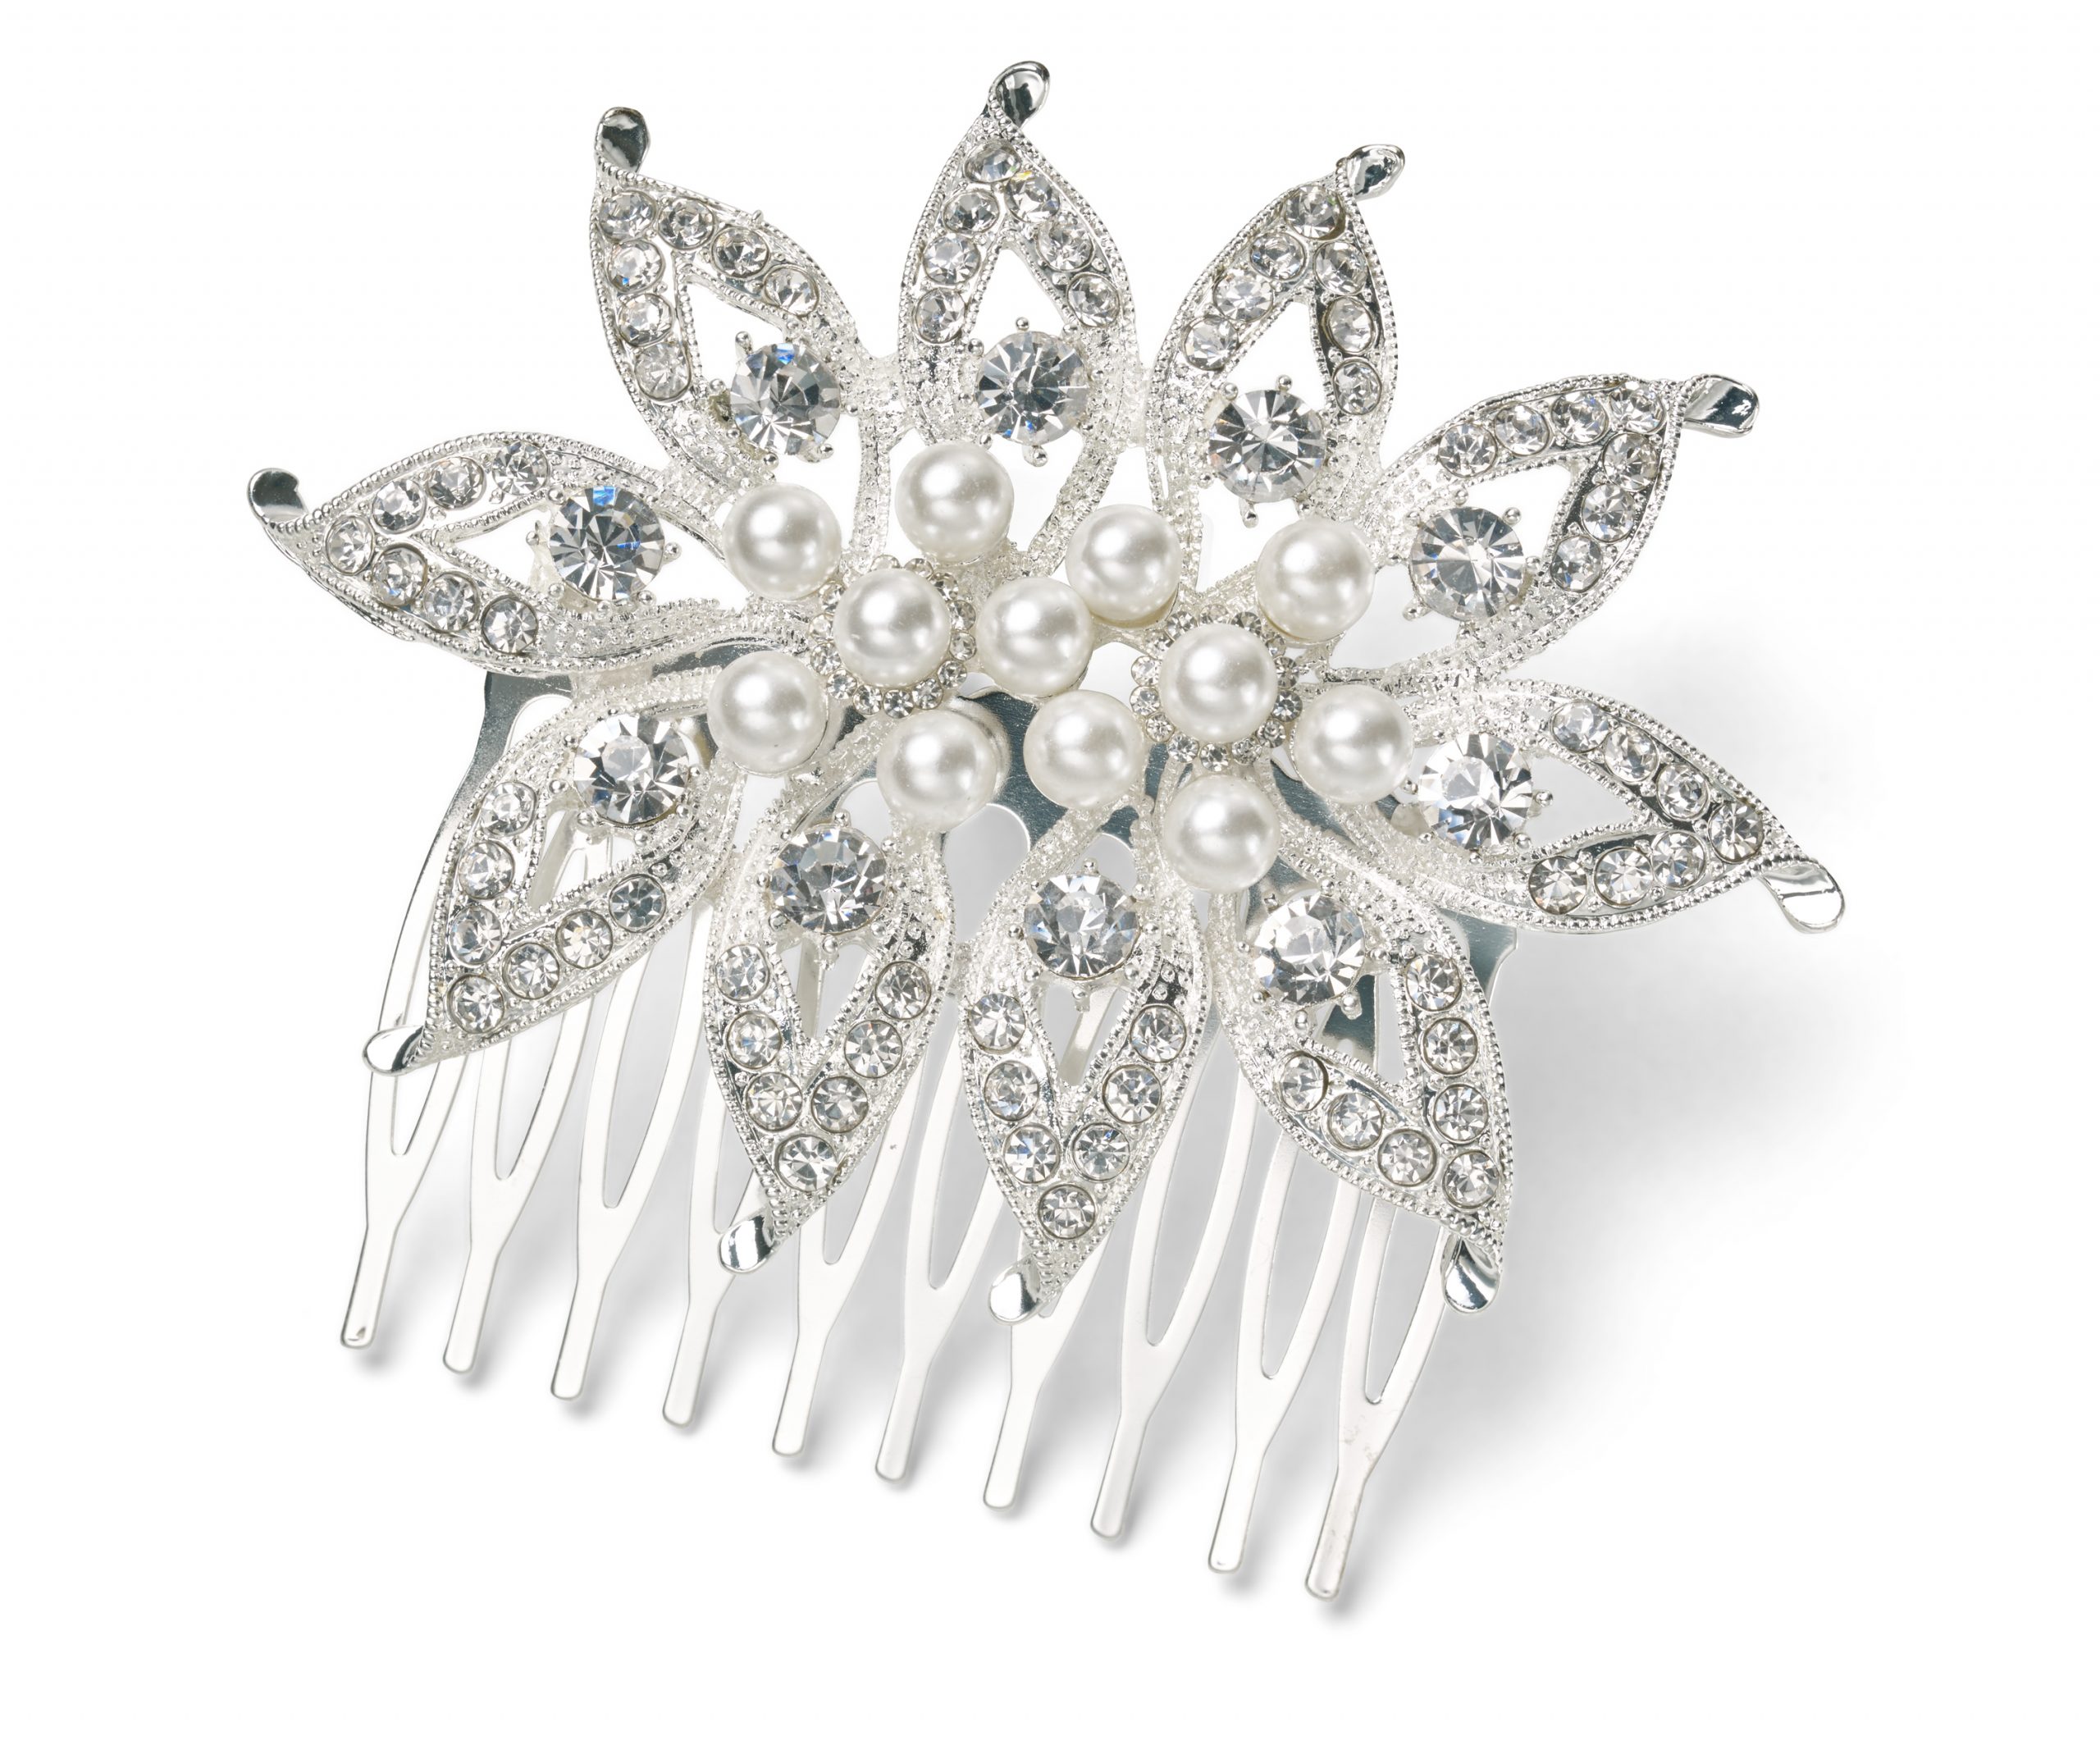 Festlicher Haarkamm mit Perlen und Strasssteinen für die Braut, in Silberimitation, von CELEBRIDE Trisa Accessoires, auf weissem Hintergrund